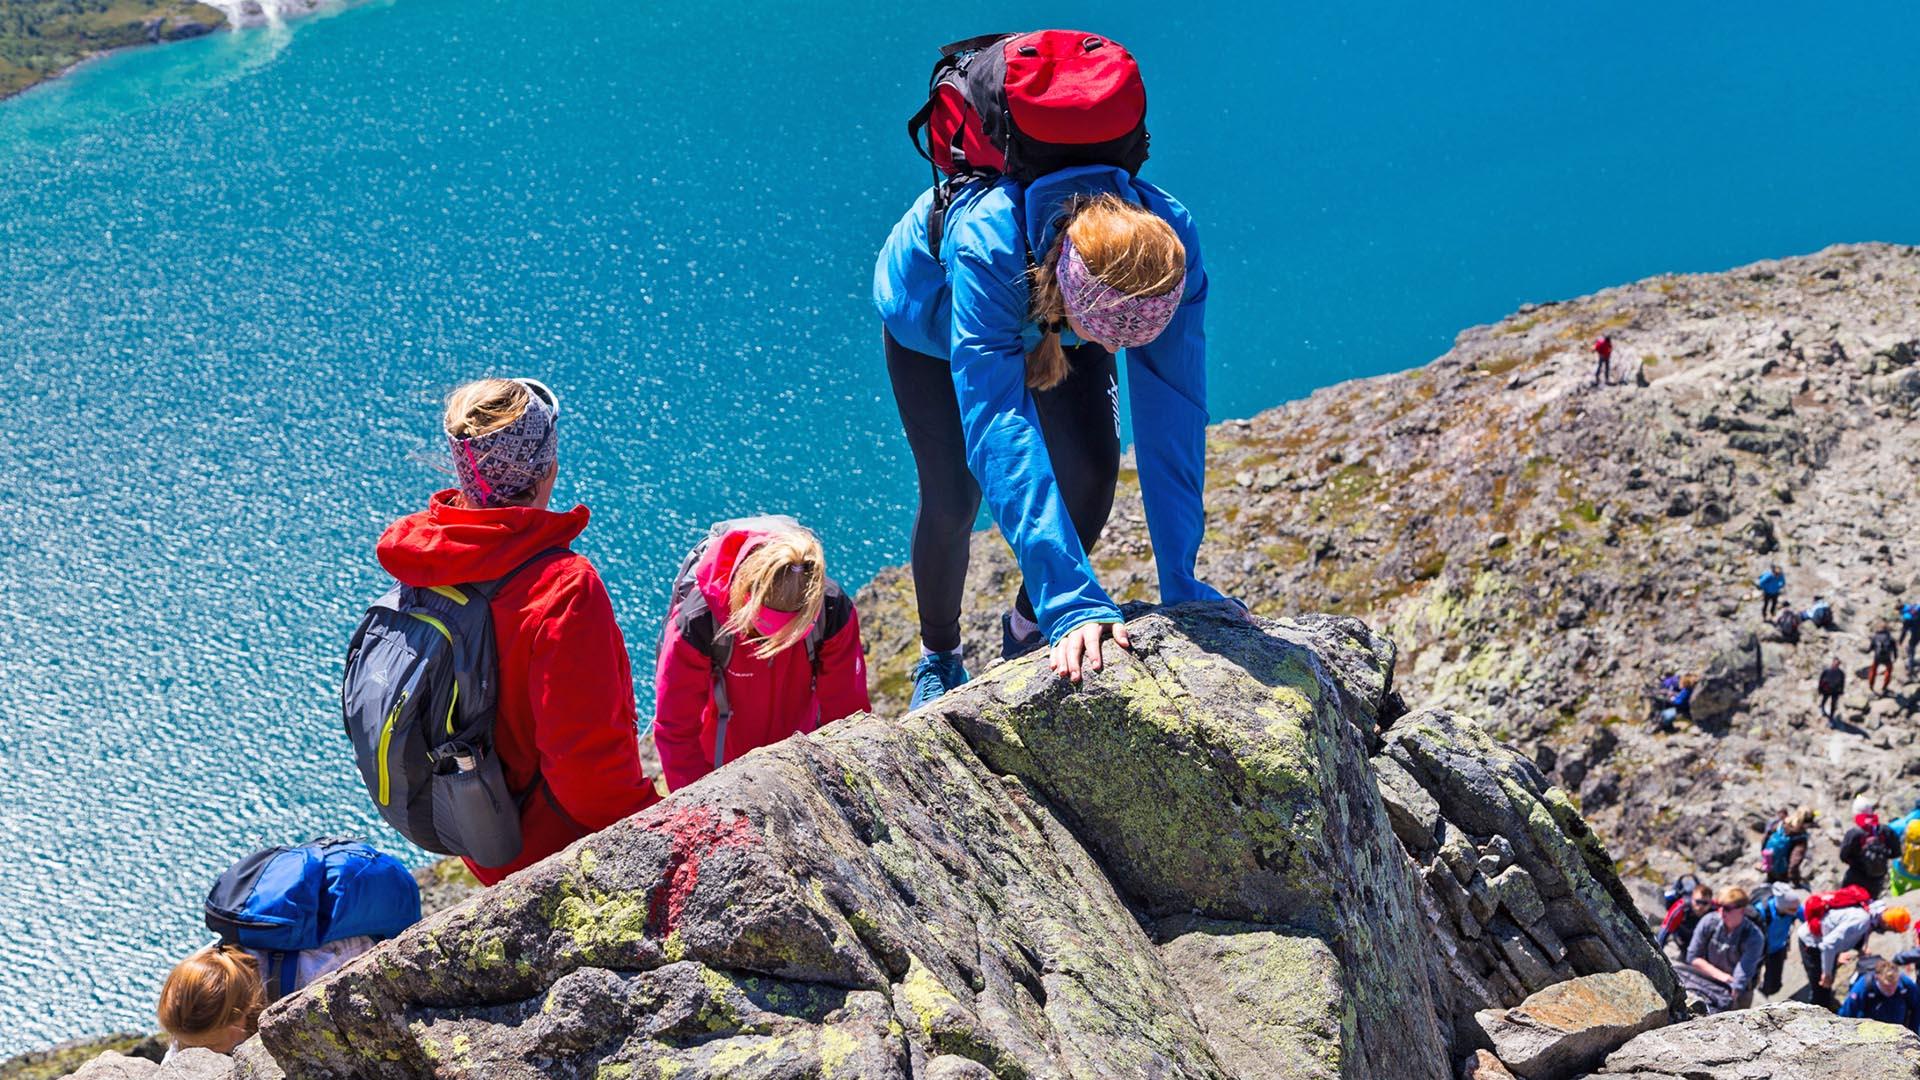 Kinder kraxeln eine luftige Passage auf einem Felsrücken empor, der über einem türkisblauen See liegt.